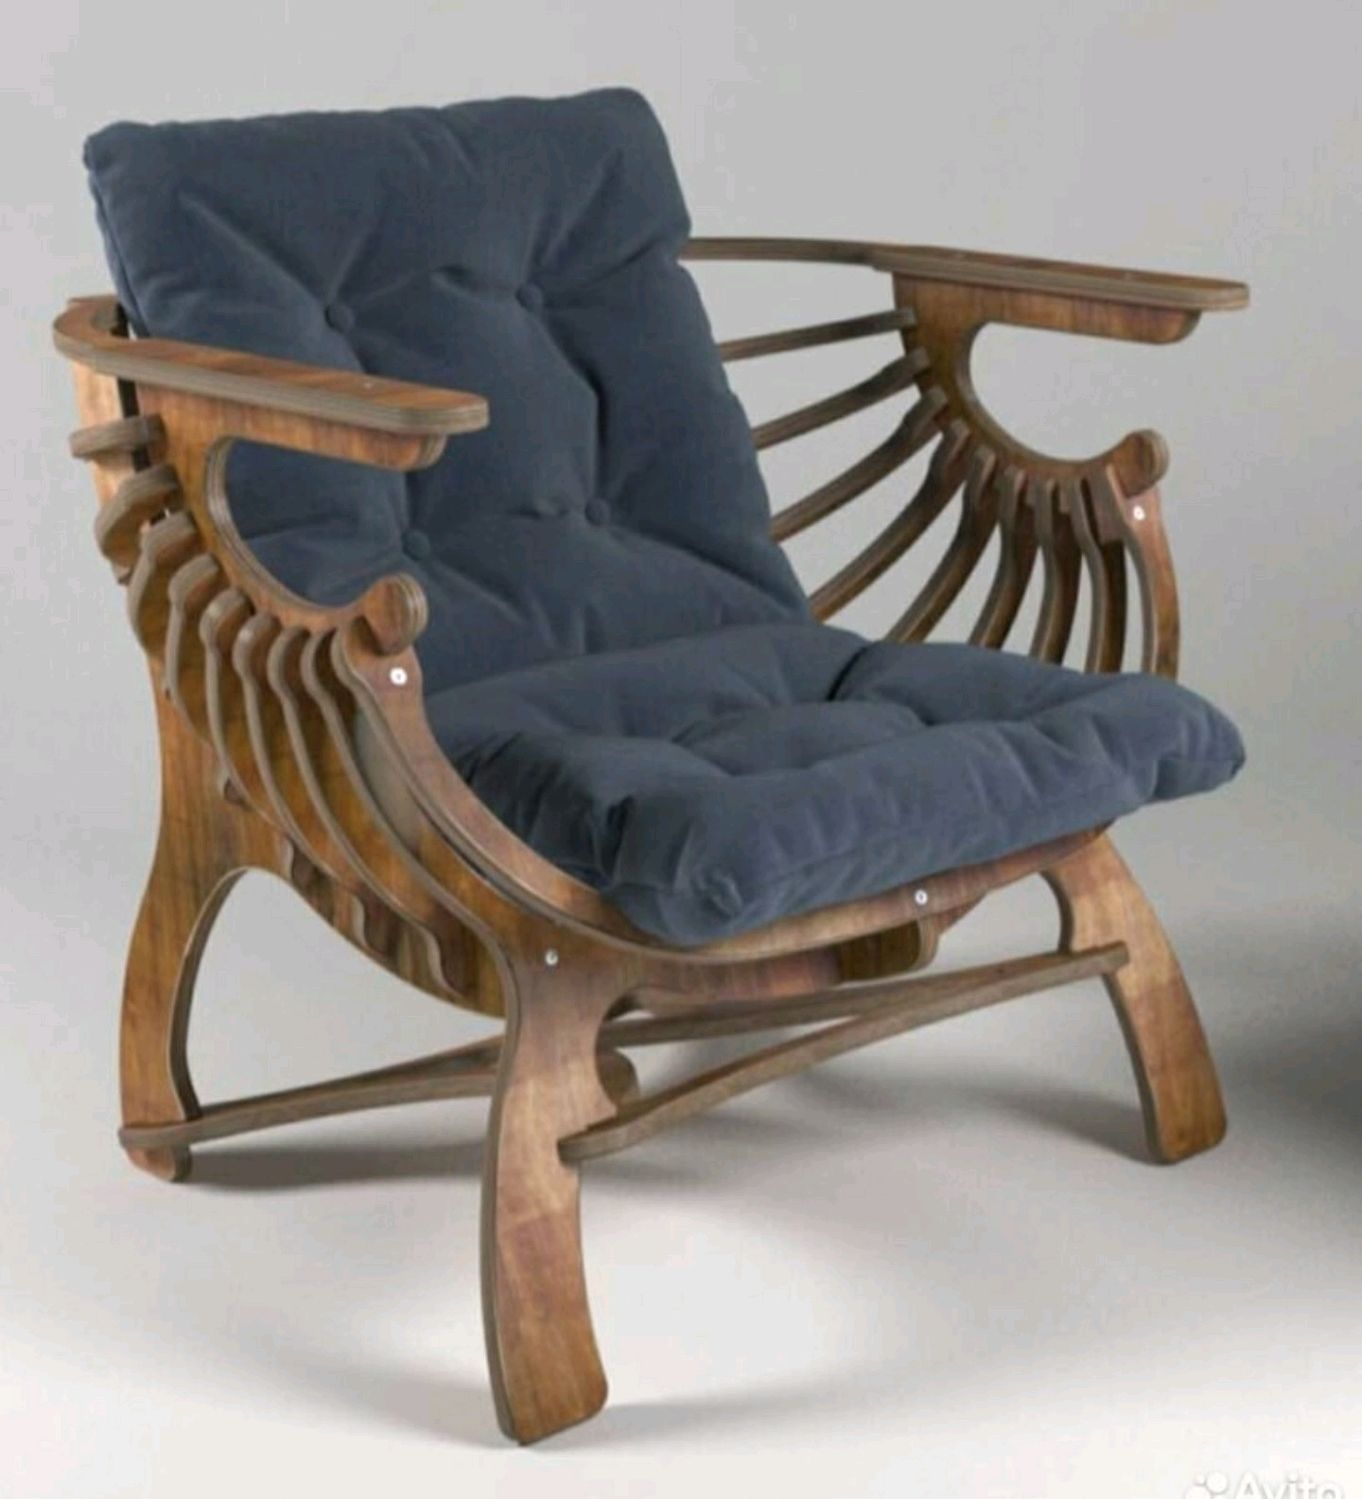 Реставрация кресла ракушка своими руками